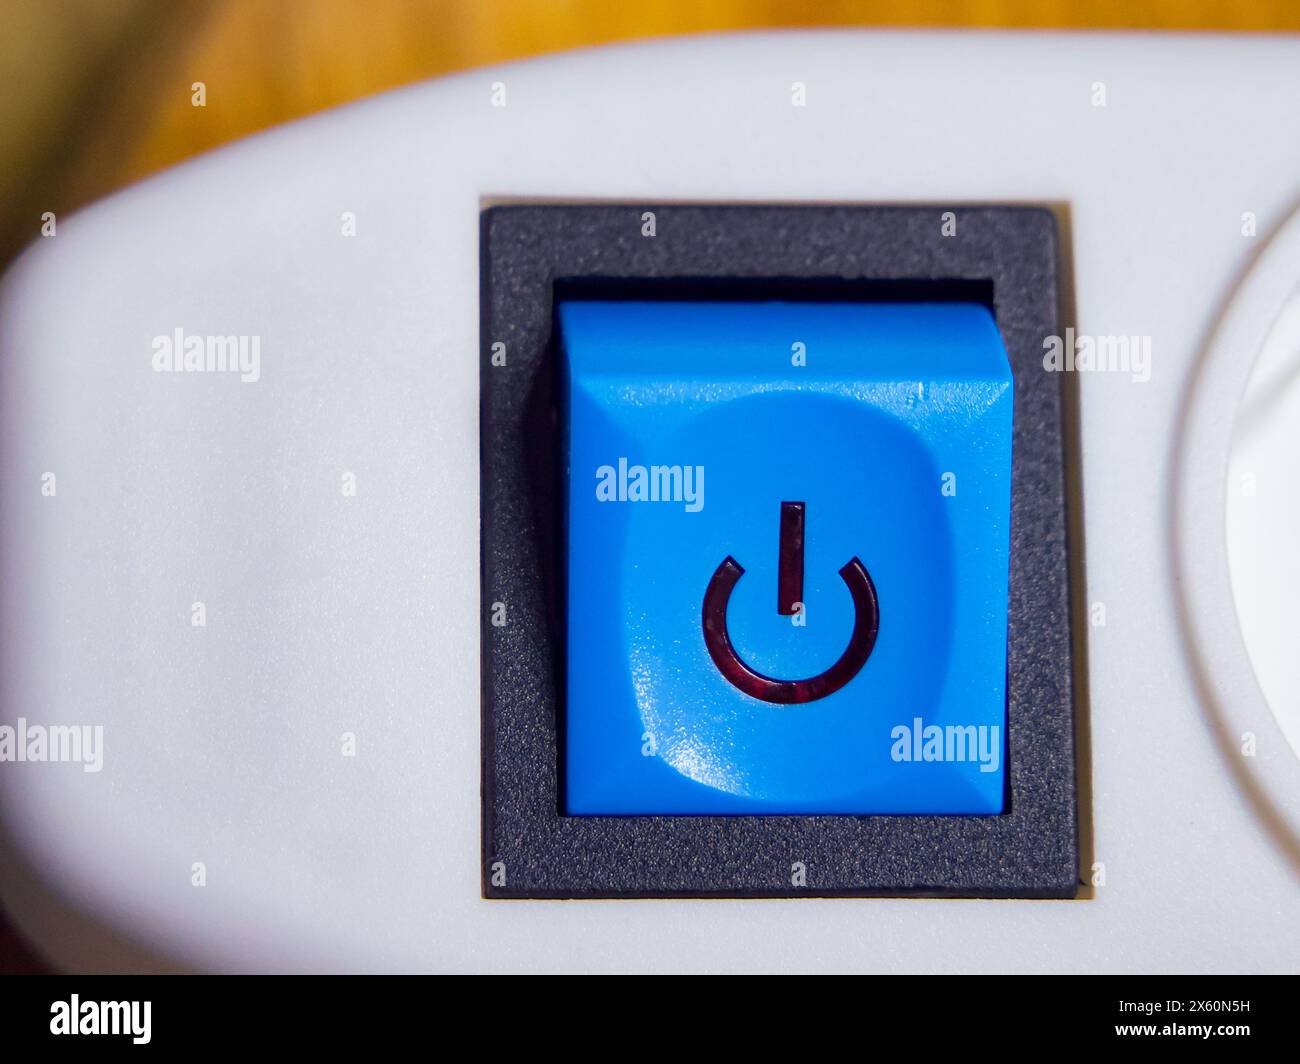 Un bouton d'alimentation bleu avec une icône d'alimentation, défini sur un appareil blanc, suggérant une fonctionnalité. Banque D'Images